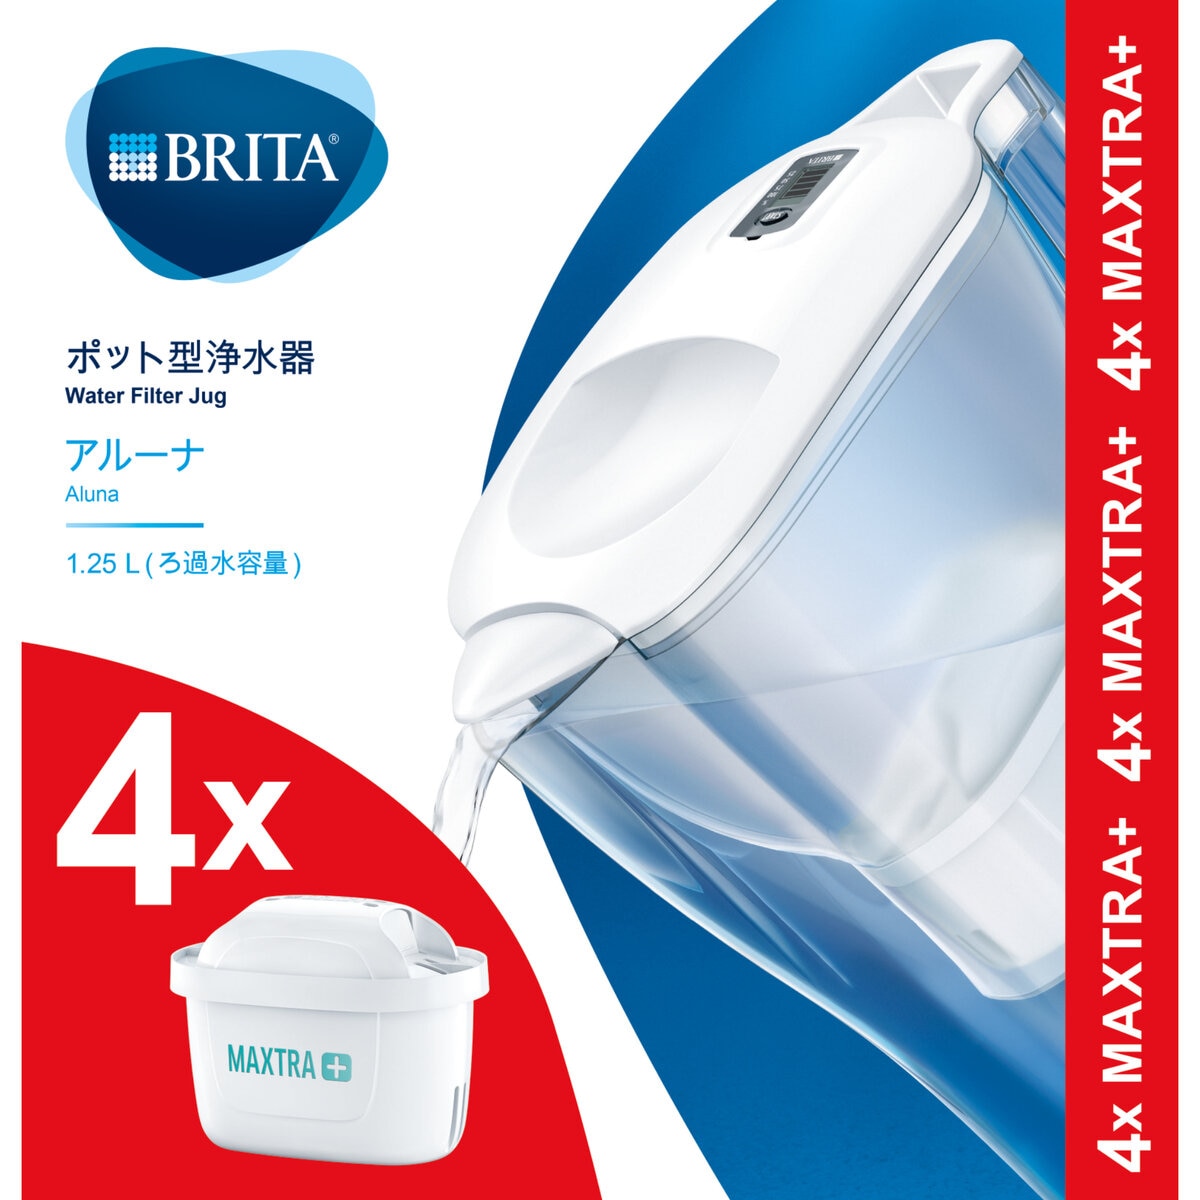 ブリタ ポット型浄水器 アルーナ カートリッジ4個付き Costco Japan